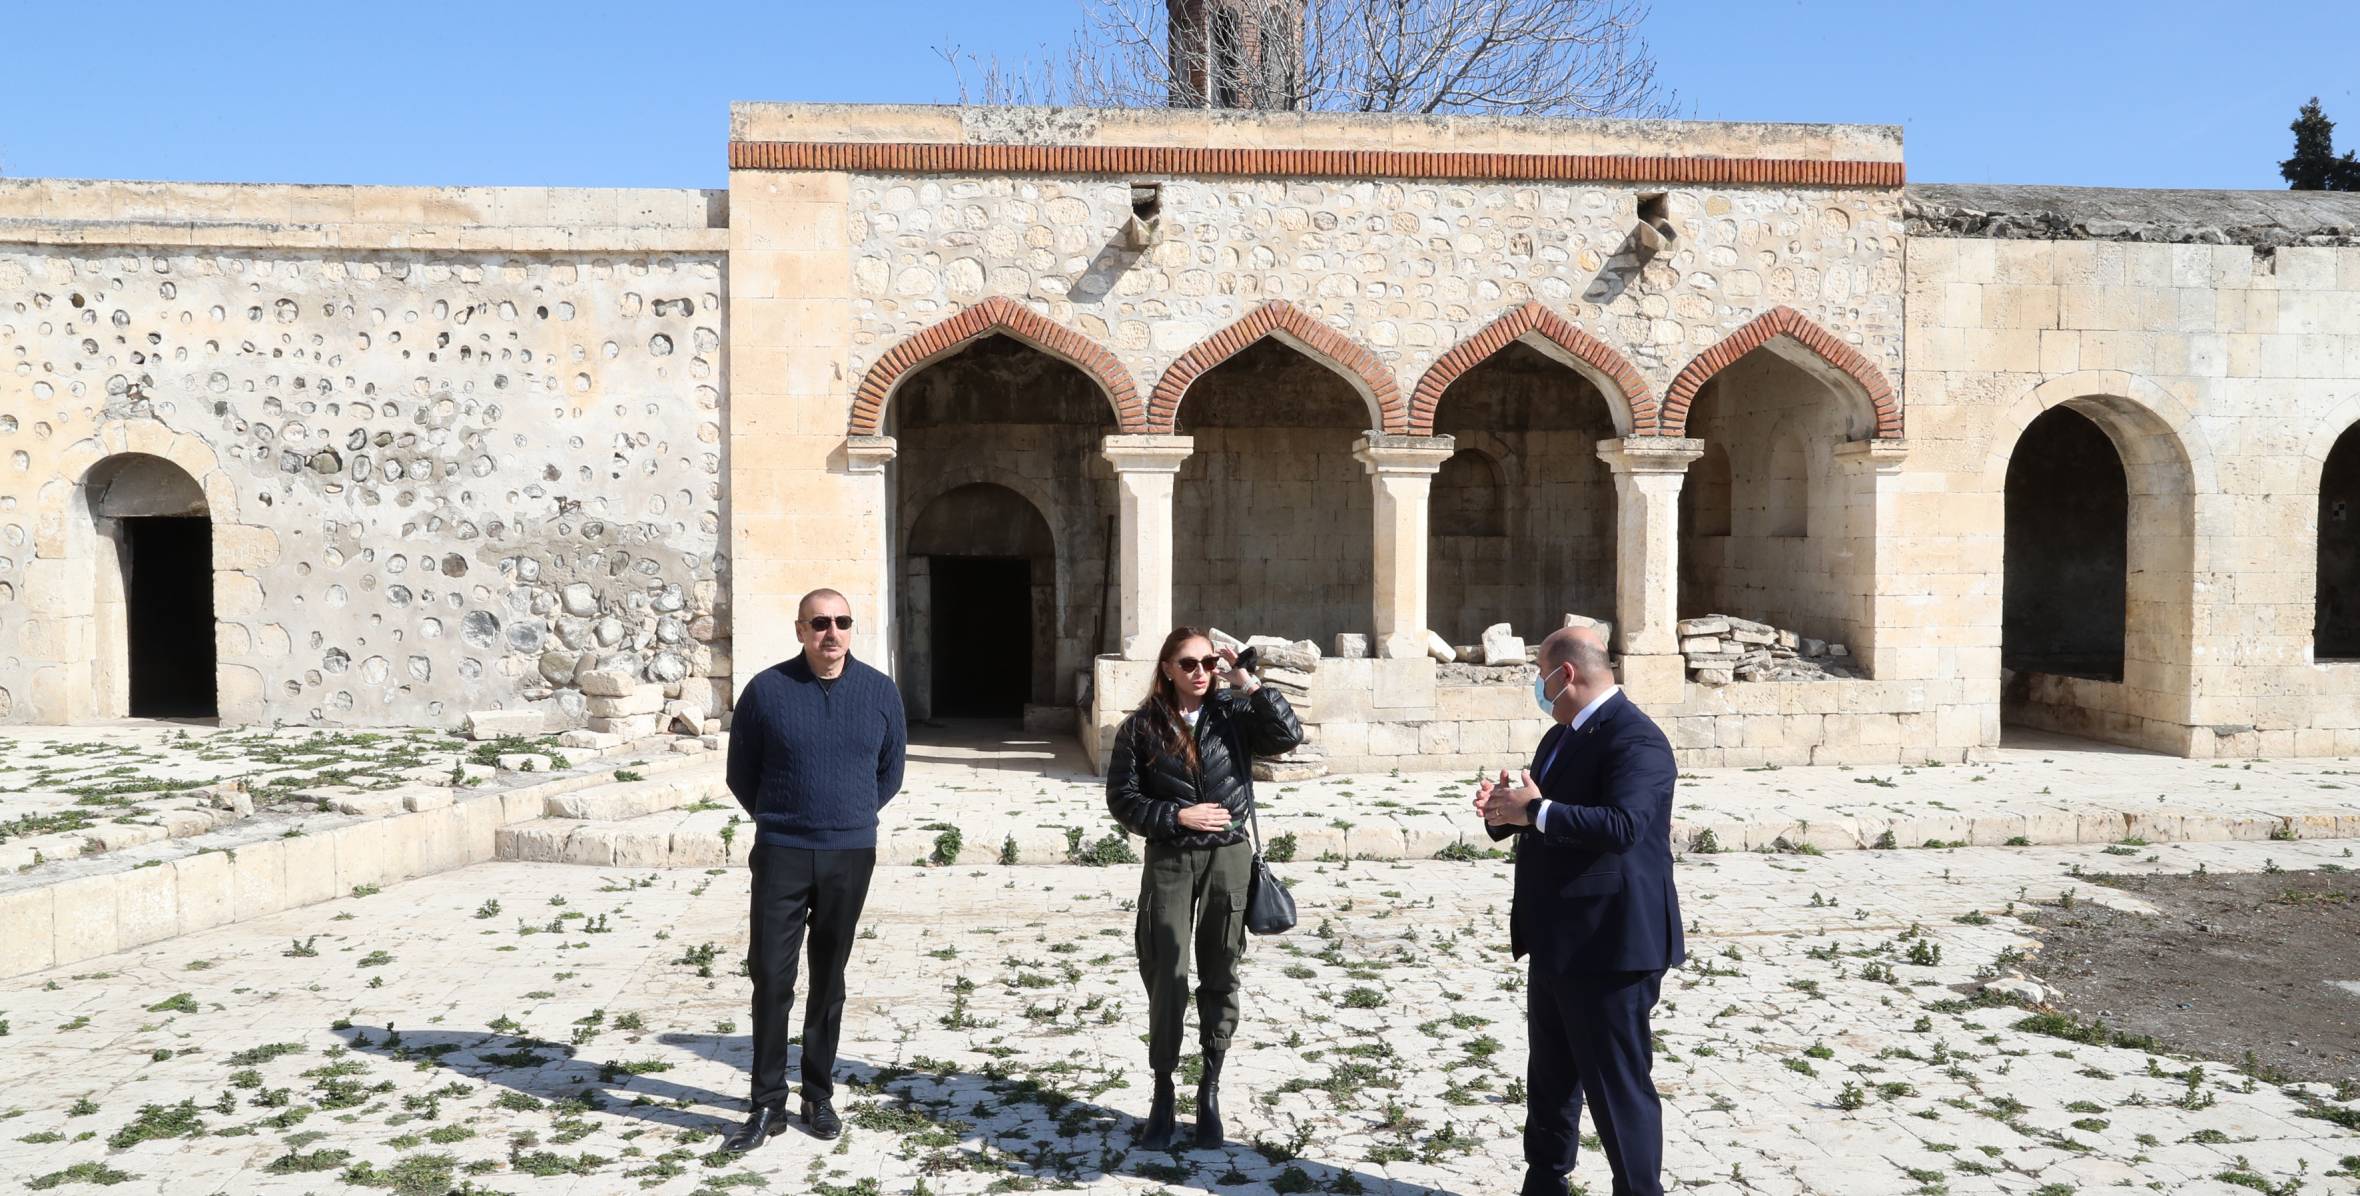 Ильхам Алиев и первая леди Мехрибан Алиева посетили усыпальницы и дом Карабахских ханов в Агдаме – комплекс Имарет